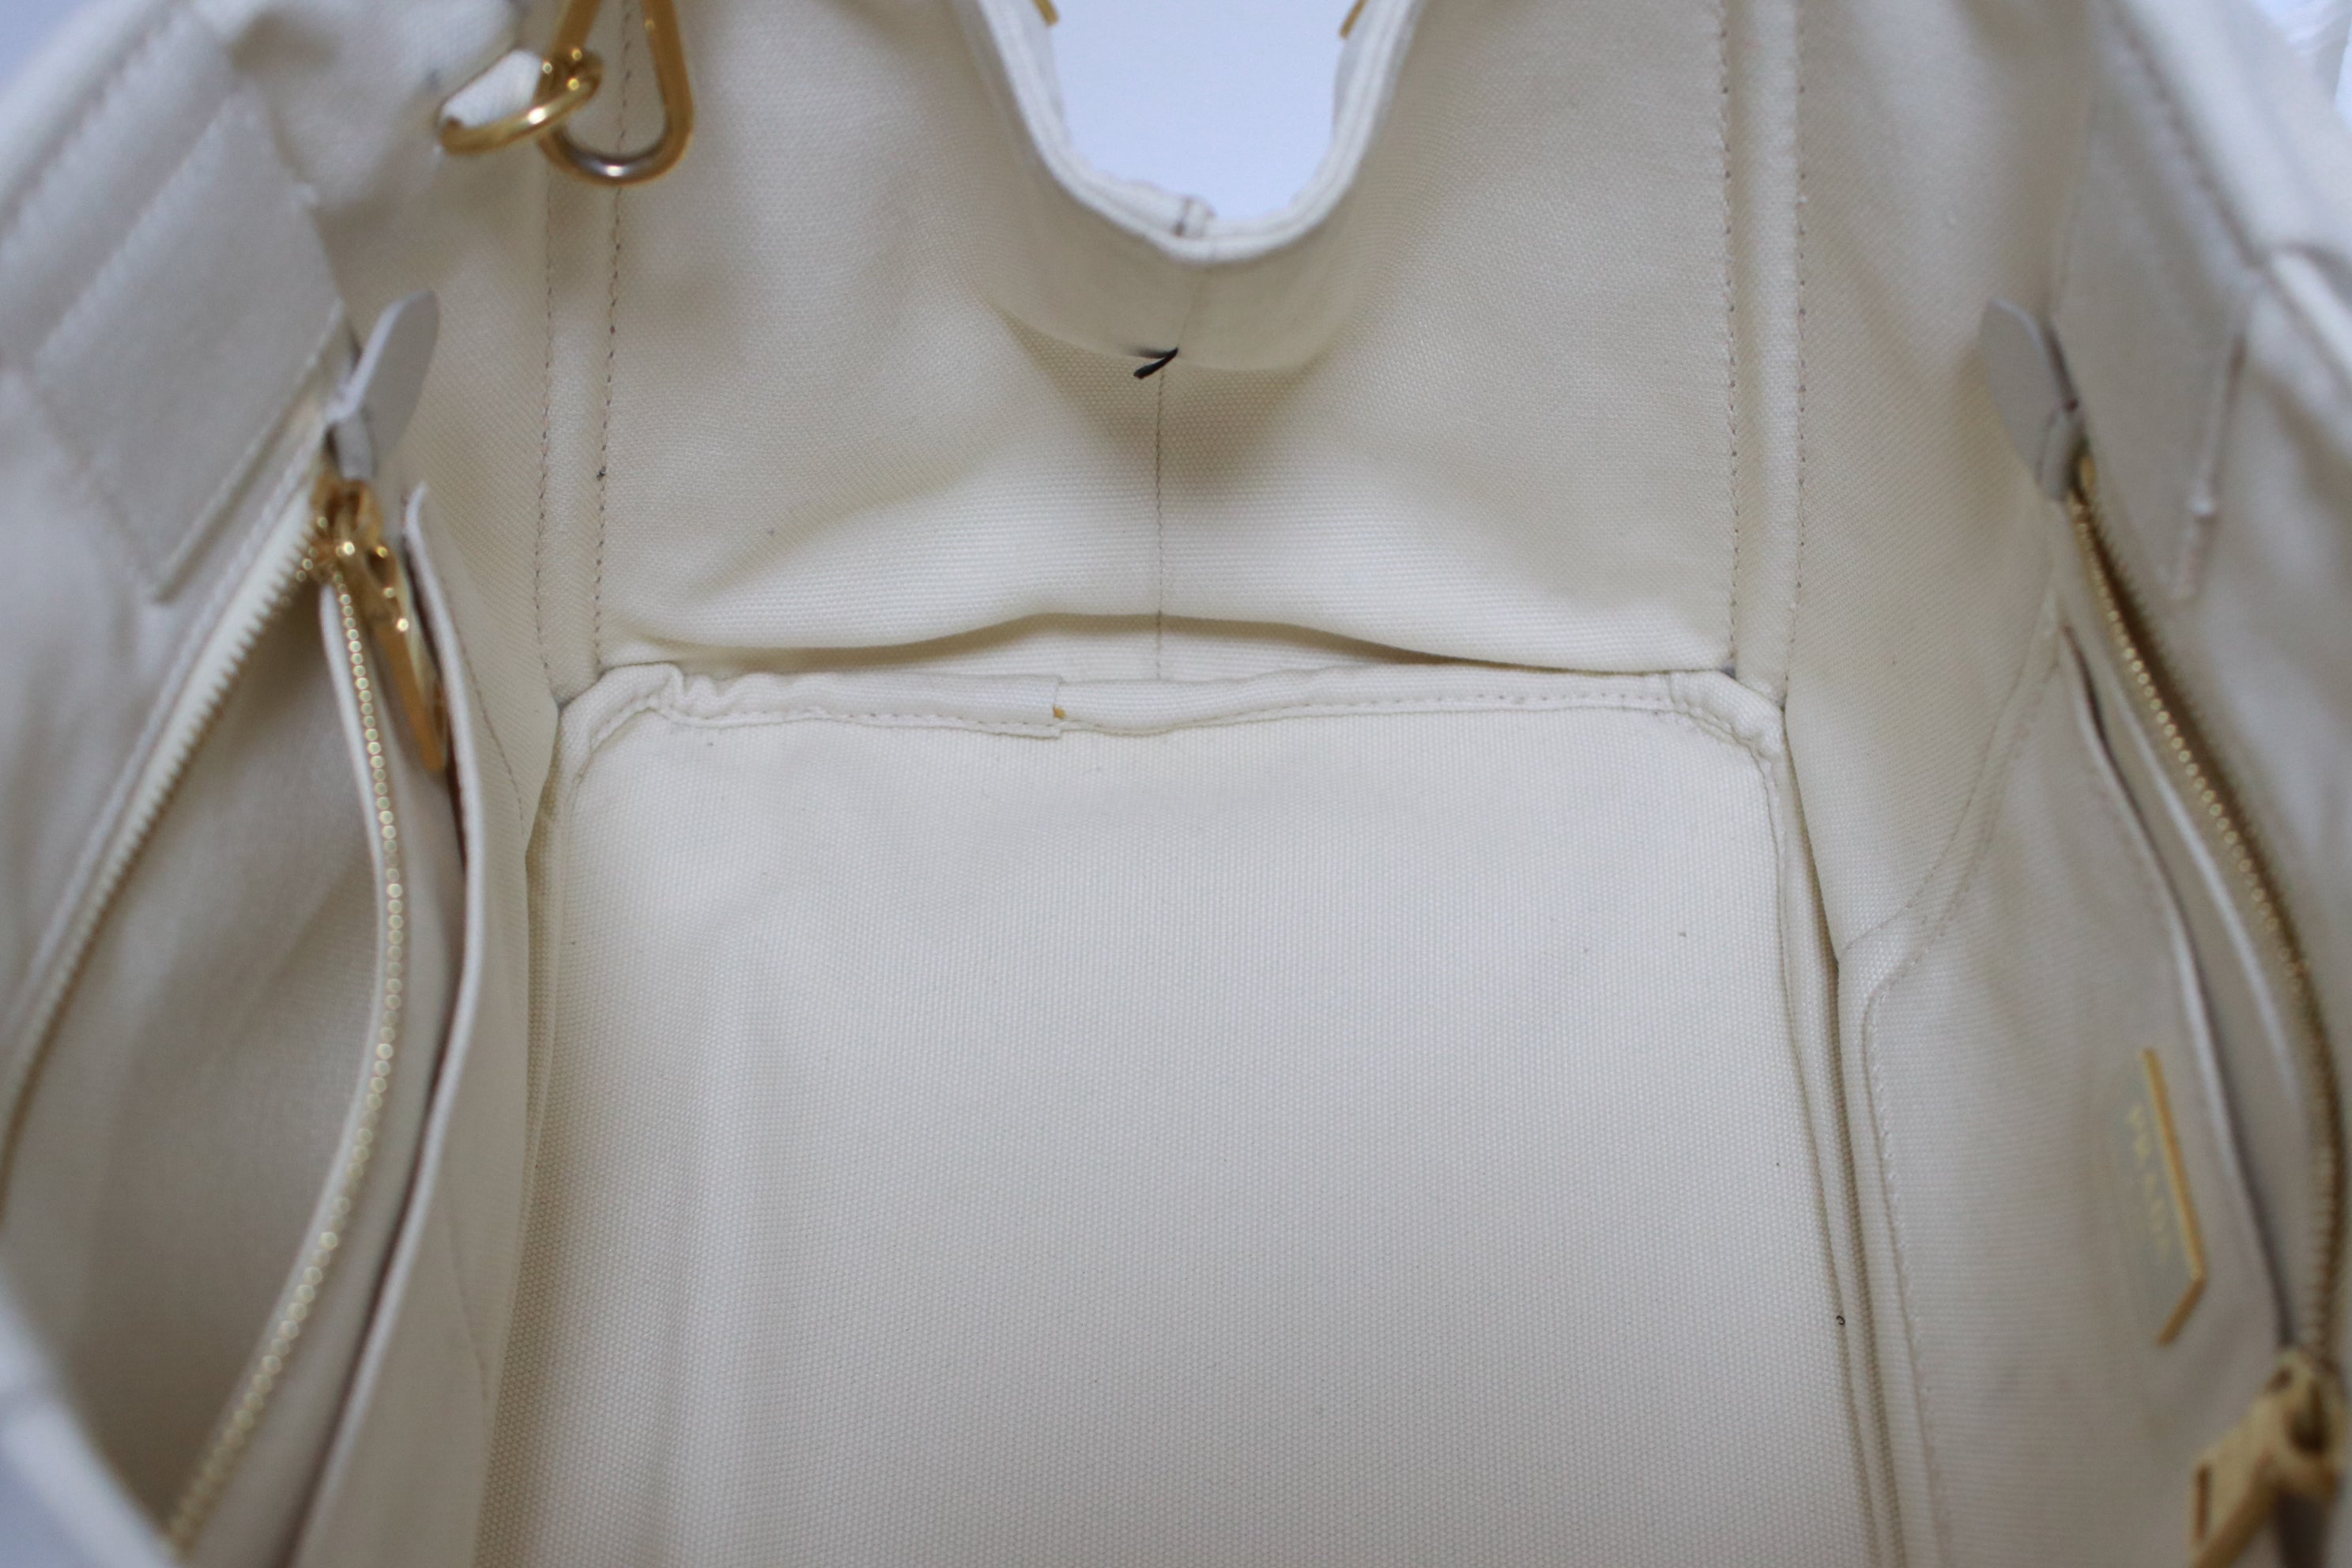 Prada Canapa Shoulder Bag Large Used (6986)